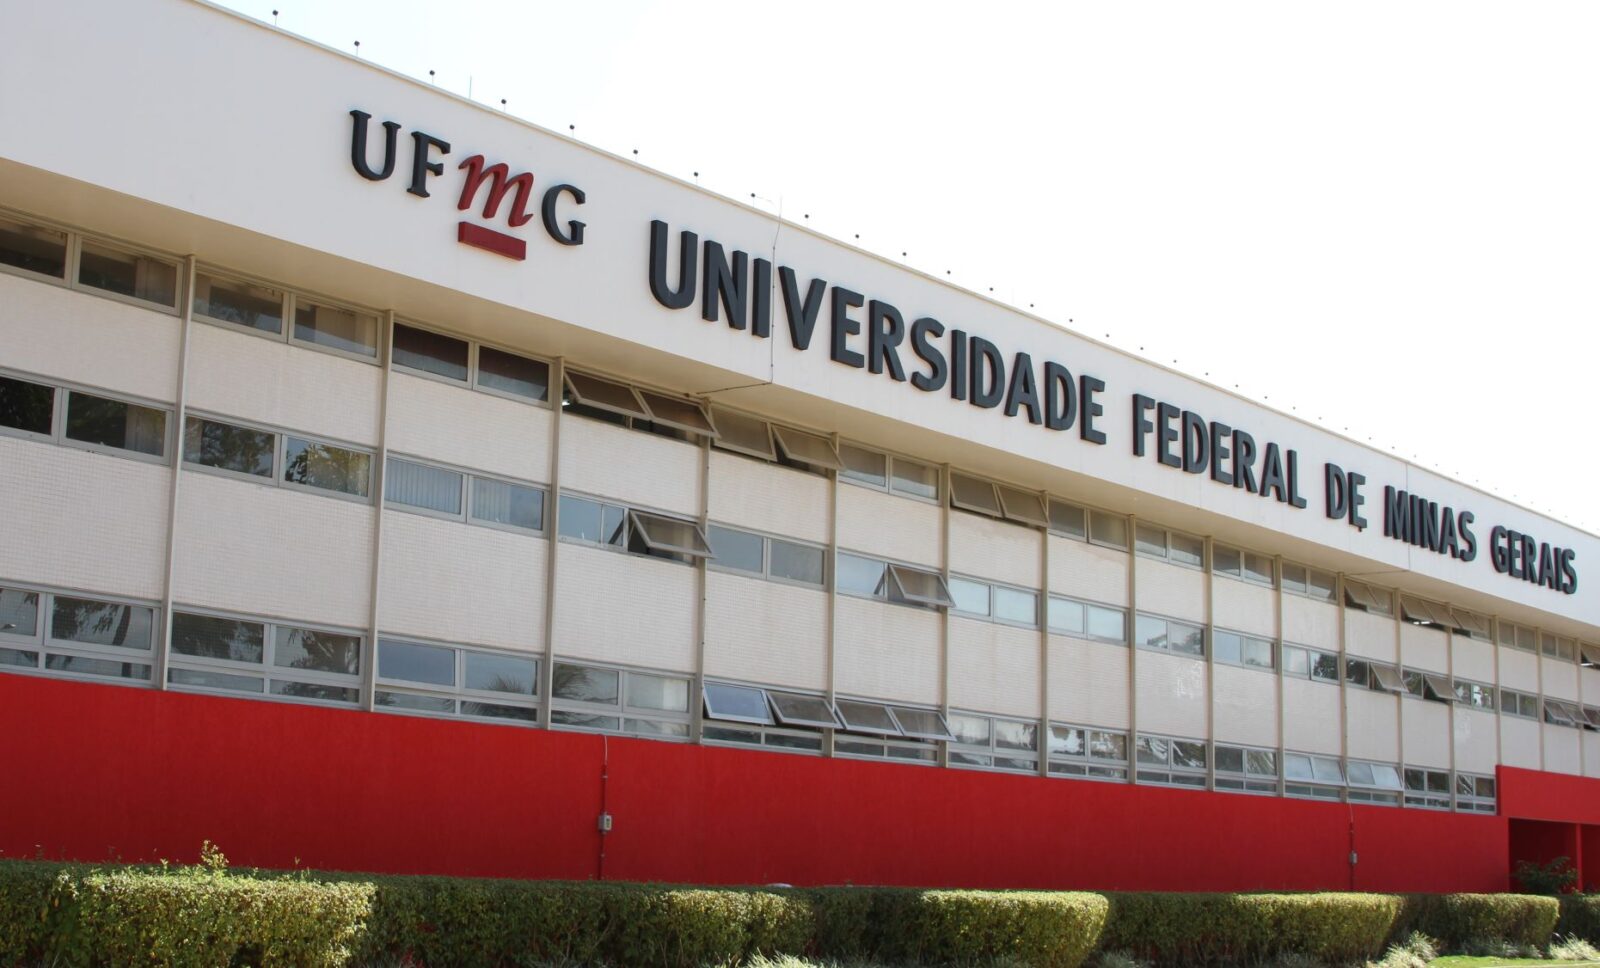 UFMG - Universidade Federal de Minas Gerais